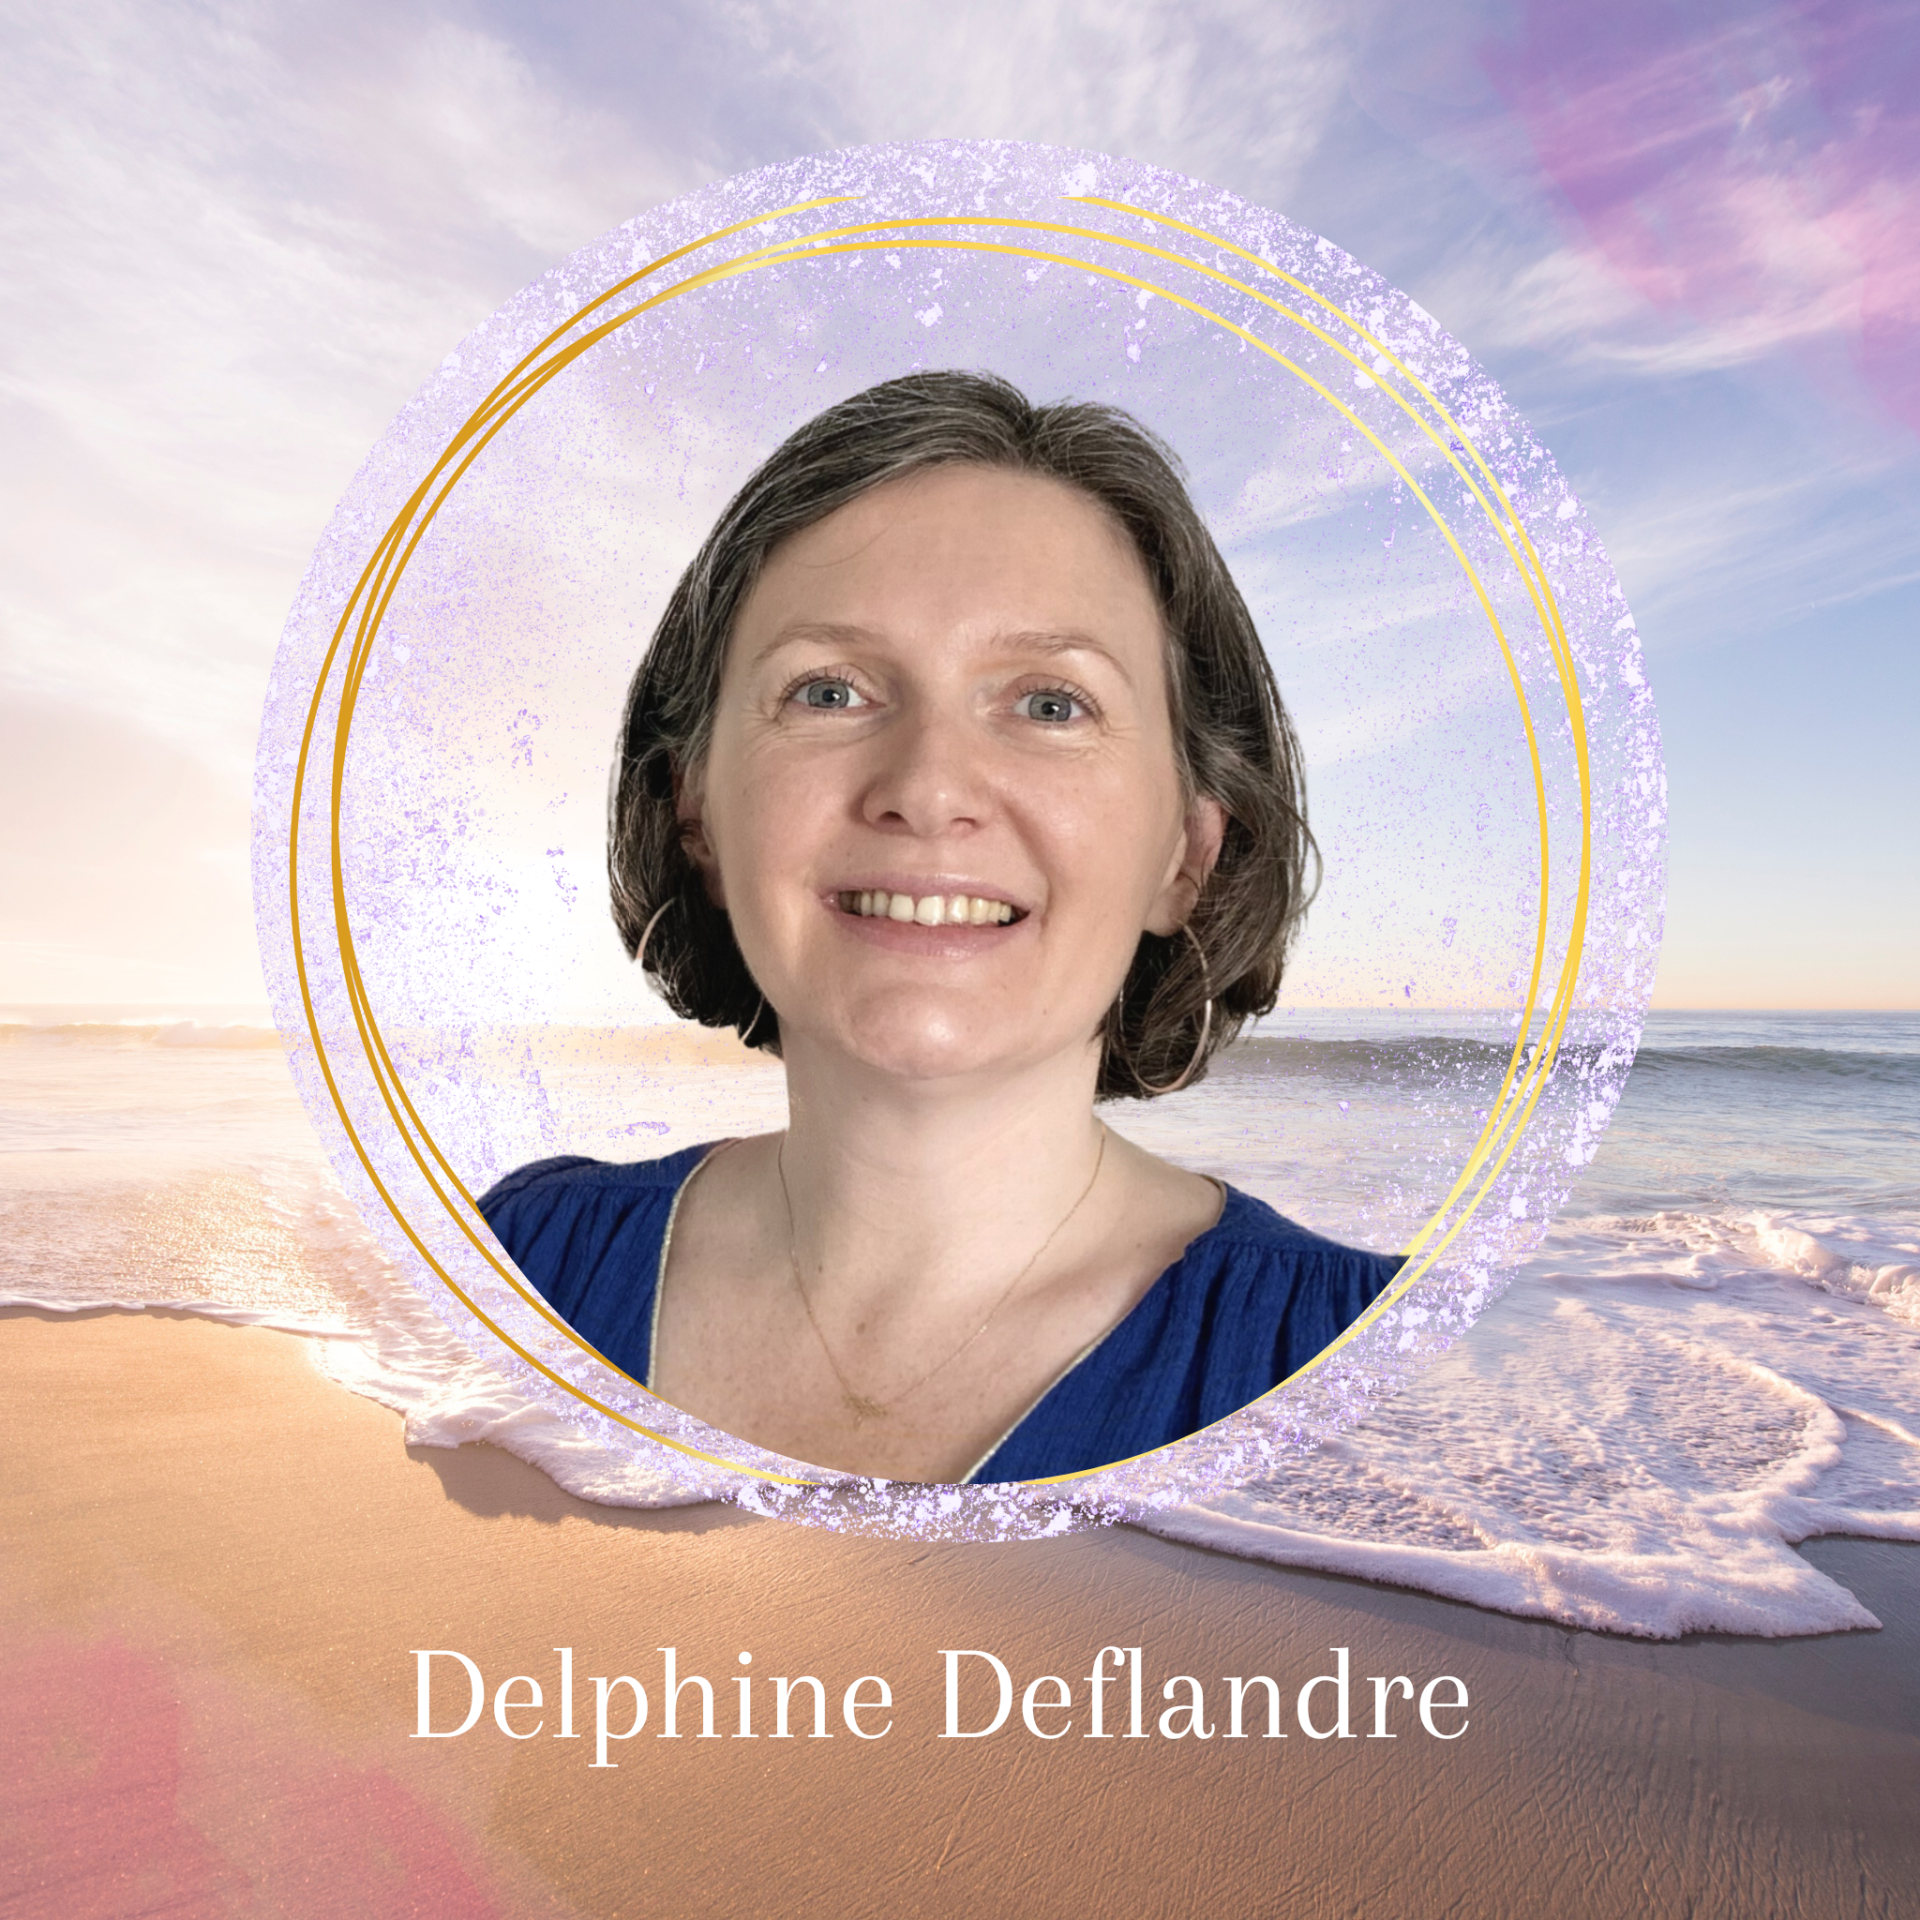 Delphine Deflandre